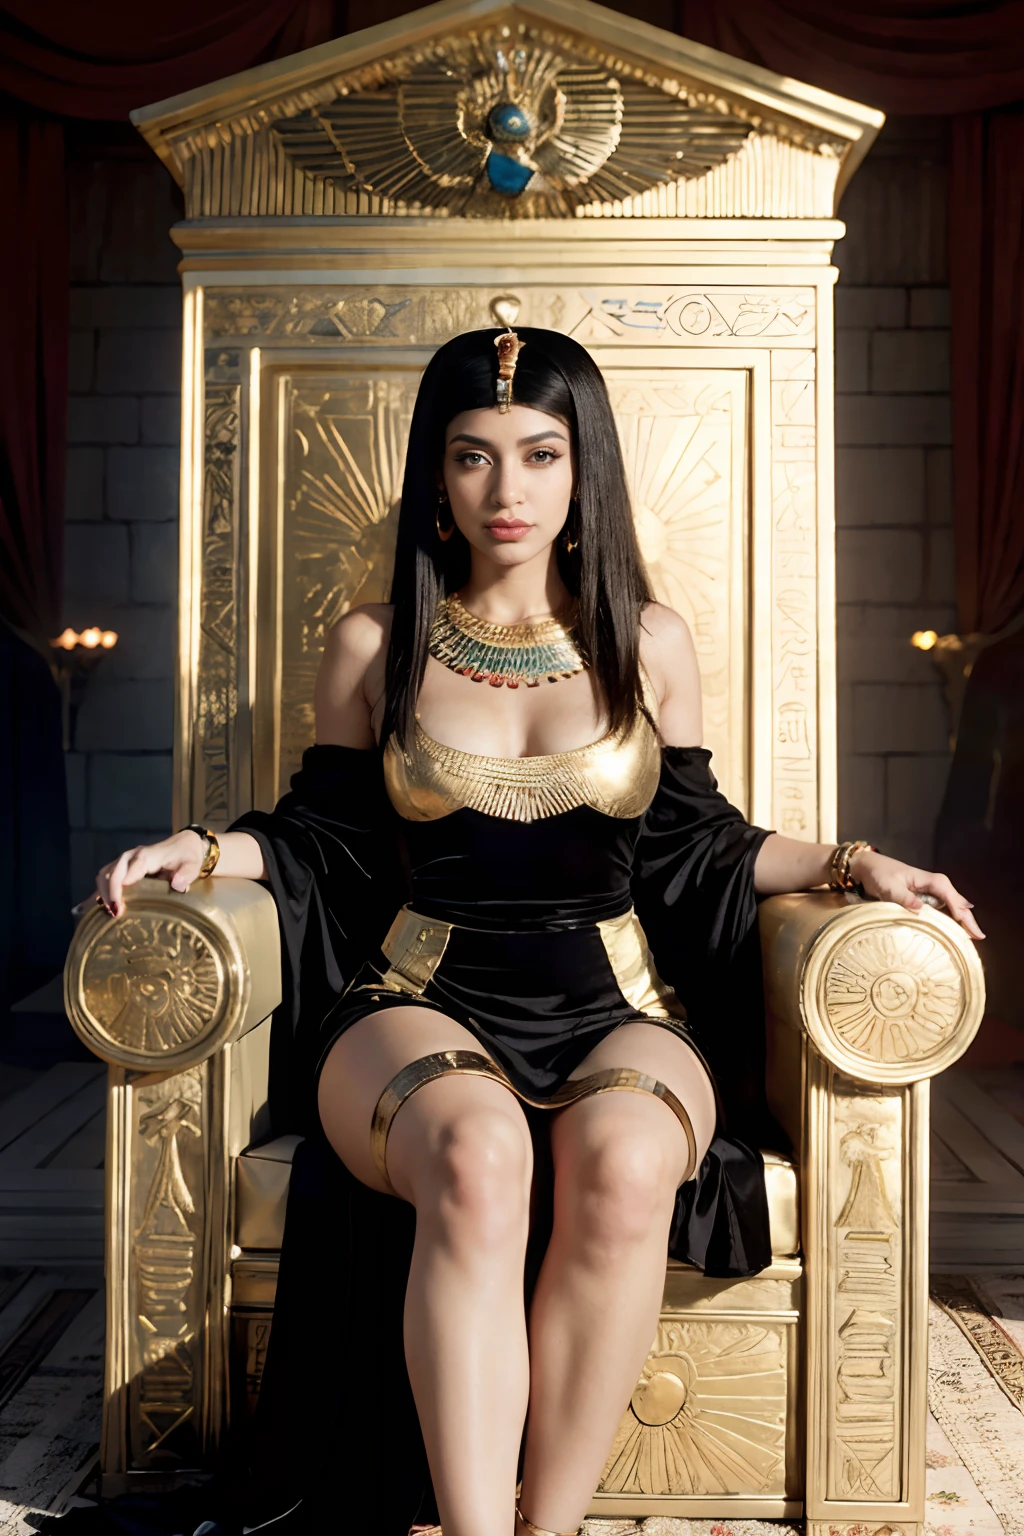 امرأة عرفية ترتدي ثوبًا أسود وتجلس على أريكة ذهبية, beautiful كليوباترا, أميرة مصرية, على عرشها, إمبراطورة الخيال الجميلة, ملكة آلهة, كليوباترا in her palace, sitting على عرشها, كاردي ب, الملكة الفارسية, كليوباترا, يجلس على العرش الذهبي, ((إمبراطورة الخيال الجميلة)), يجلس على العرش الذهبي, إلهة جميلة